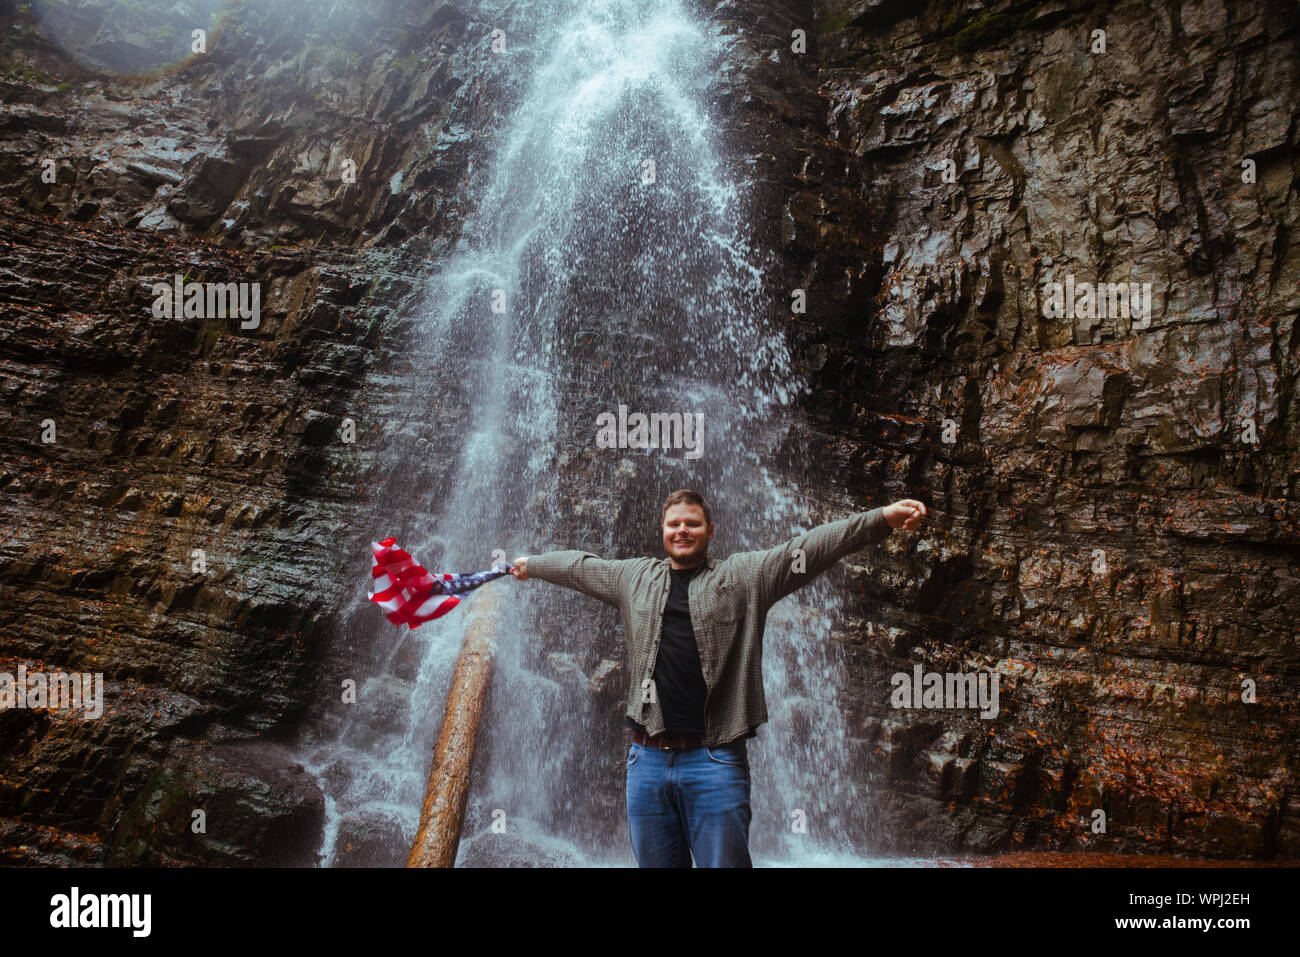 Mann mit USA-Flagge Wasserfall im Hintergrund Stockfoto